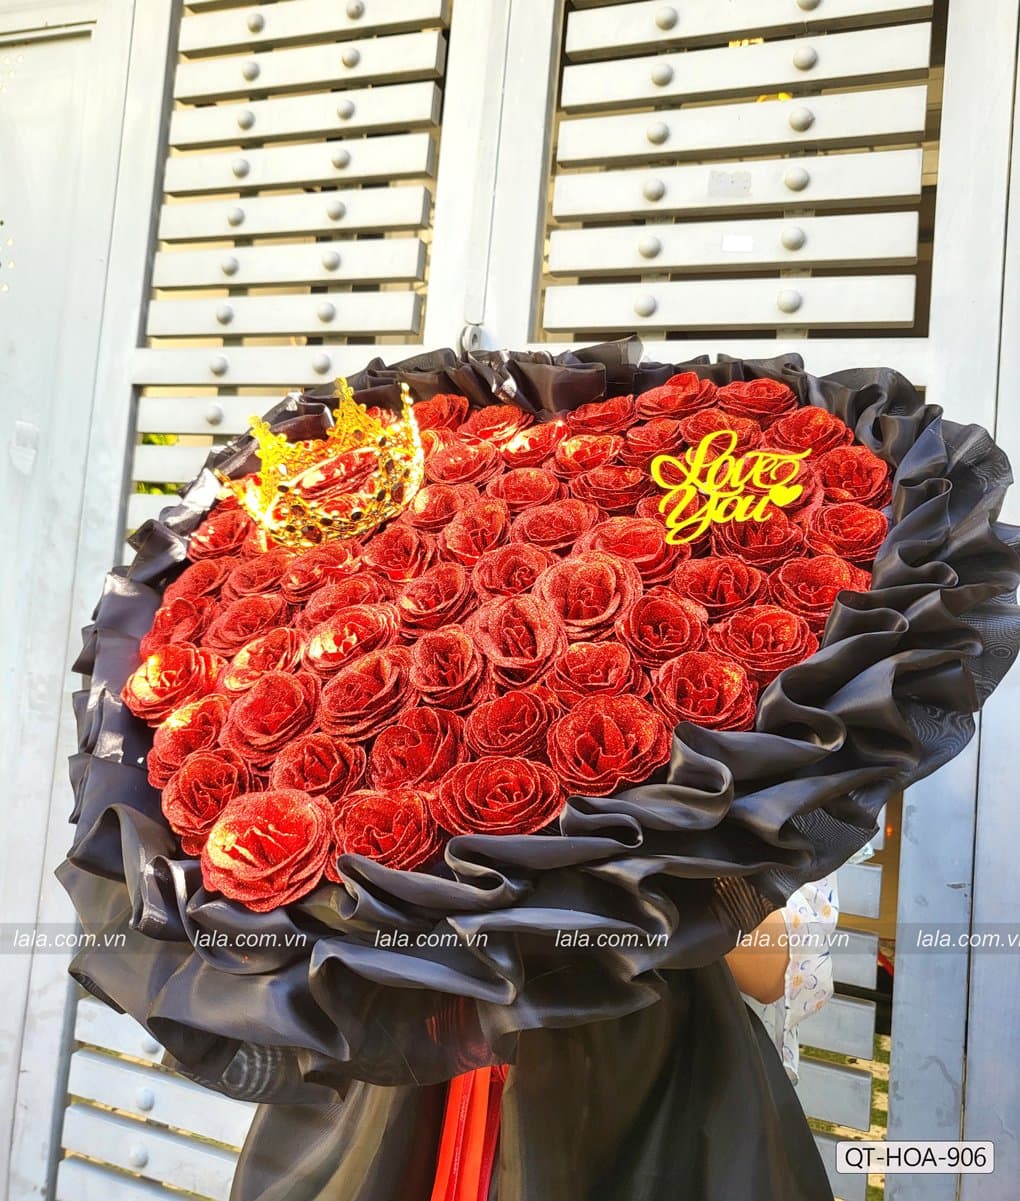 Bó hoa hồng nhũ kim tuyến 66 bông Vẻ Đẹp Hoàn Mỹ mẫu 906